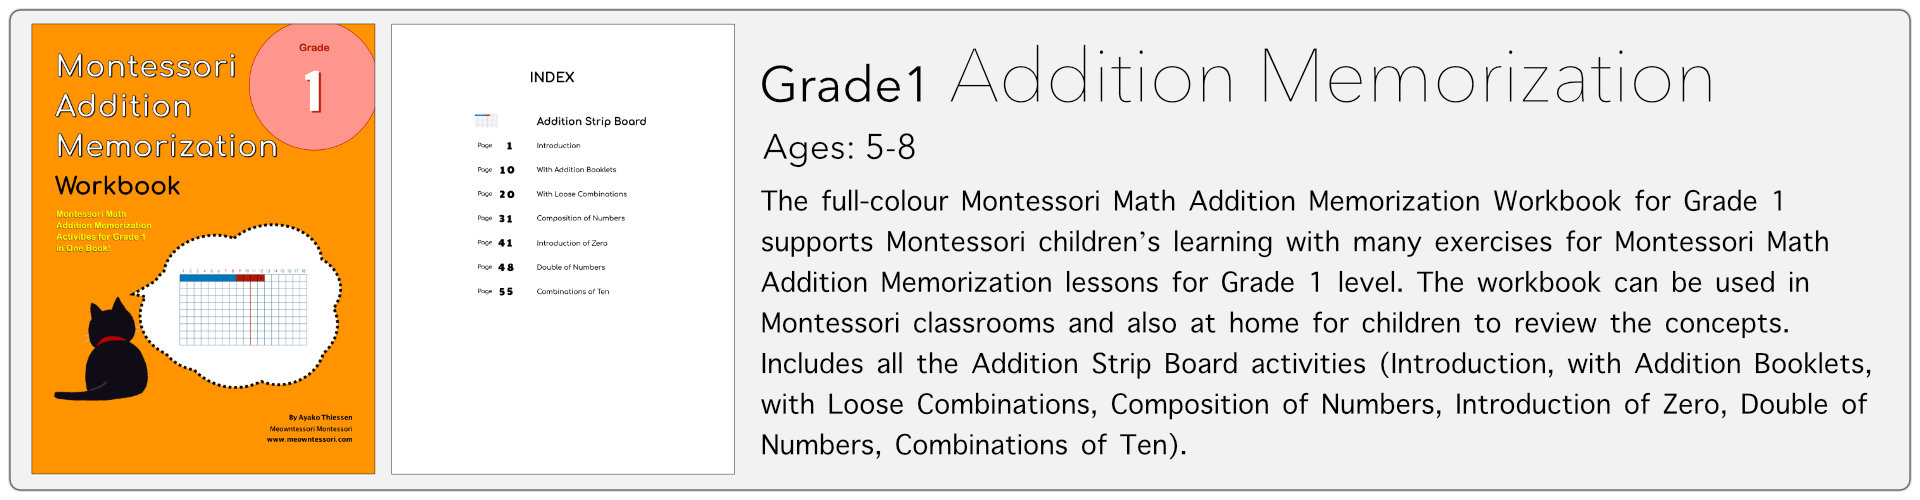 grade1 addition memorization